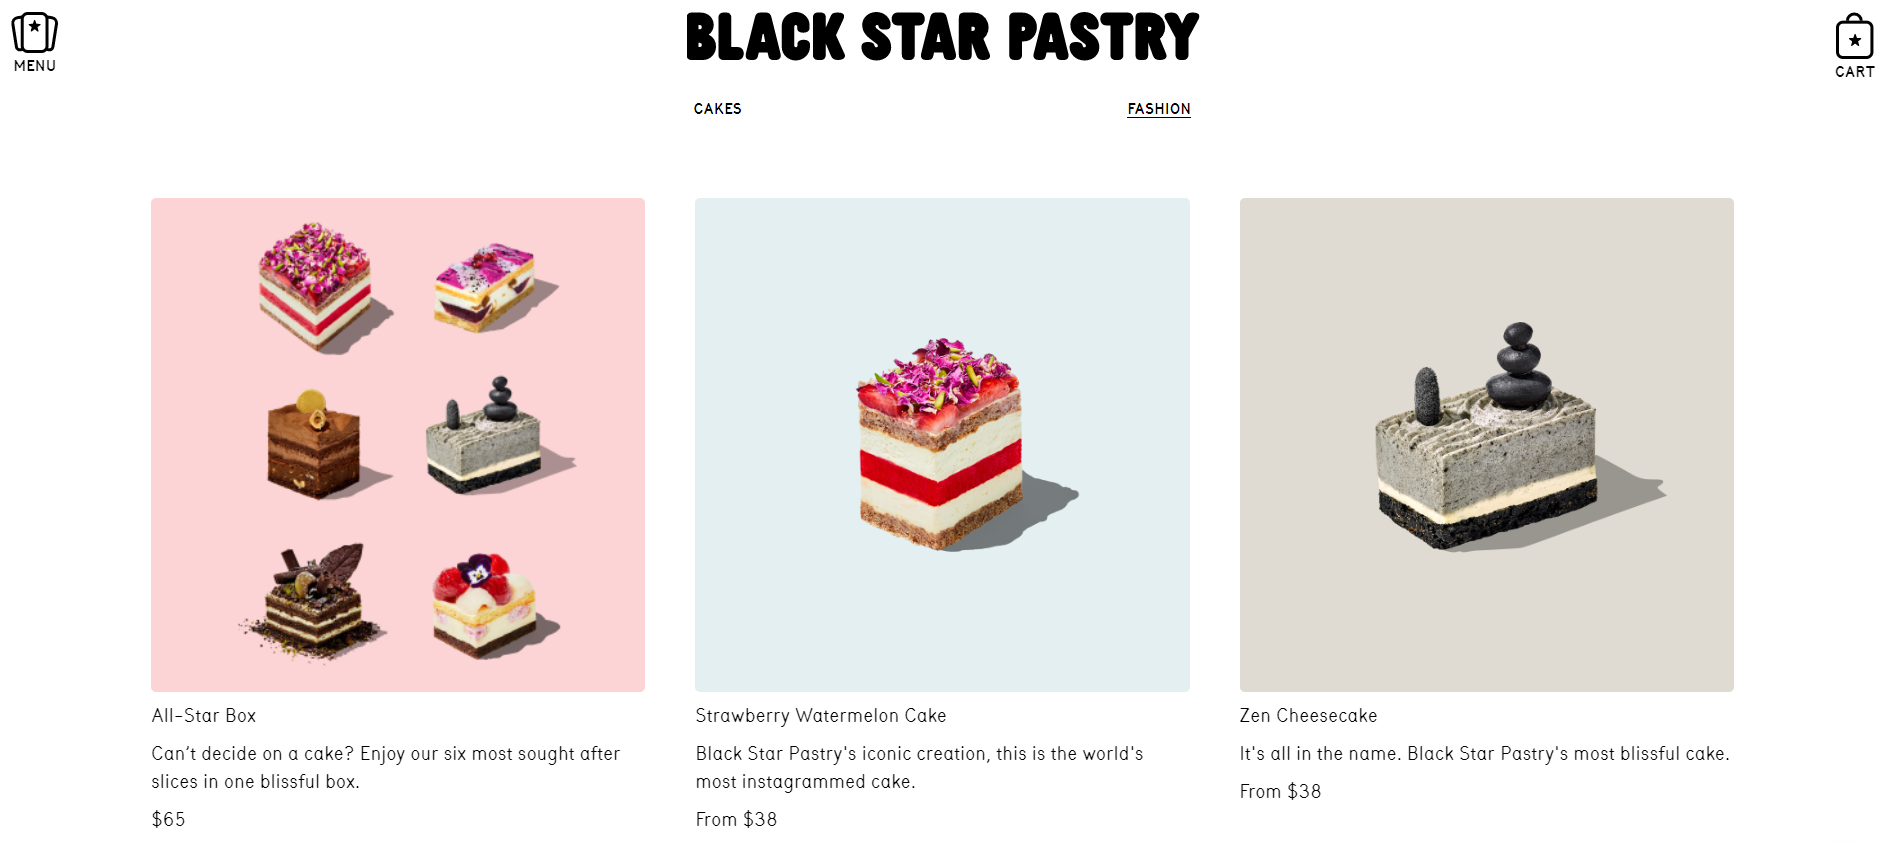 Zdjęcia estetycznego jedzenia są główną przewagą strony Black Star Pastry